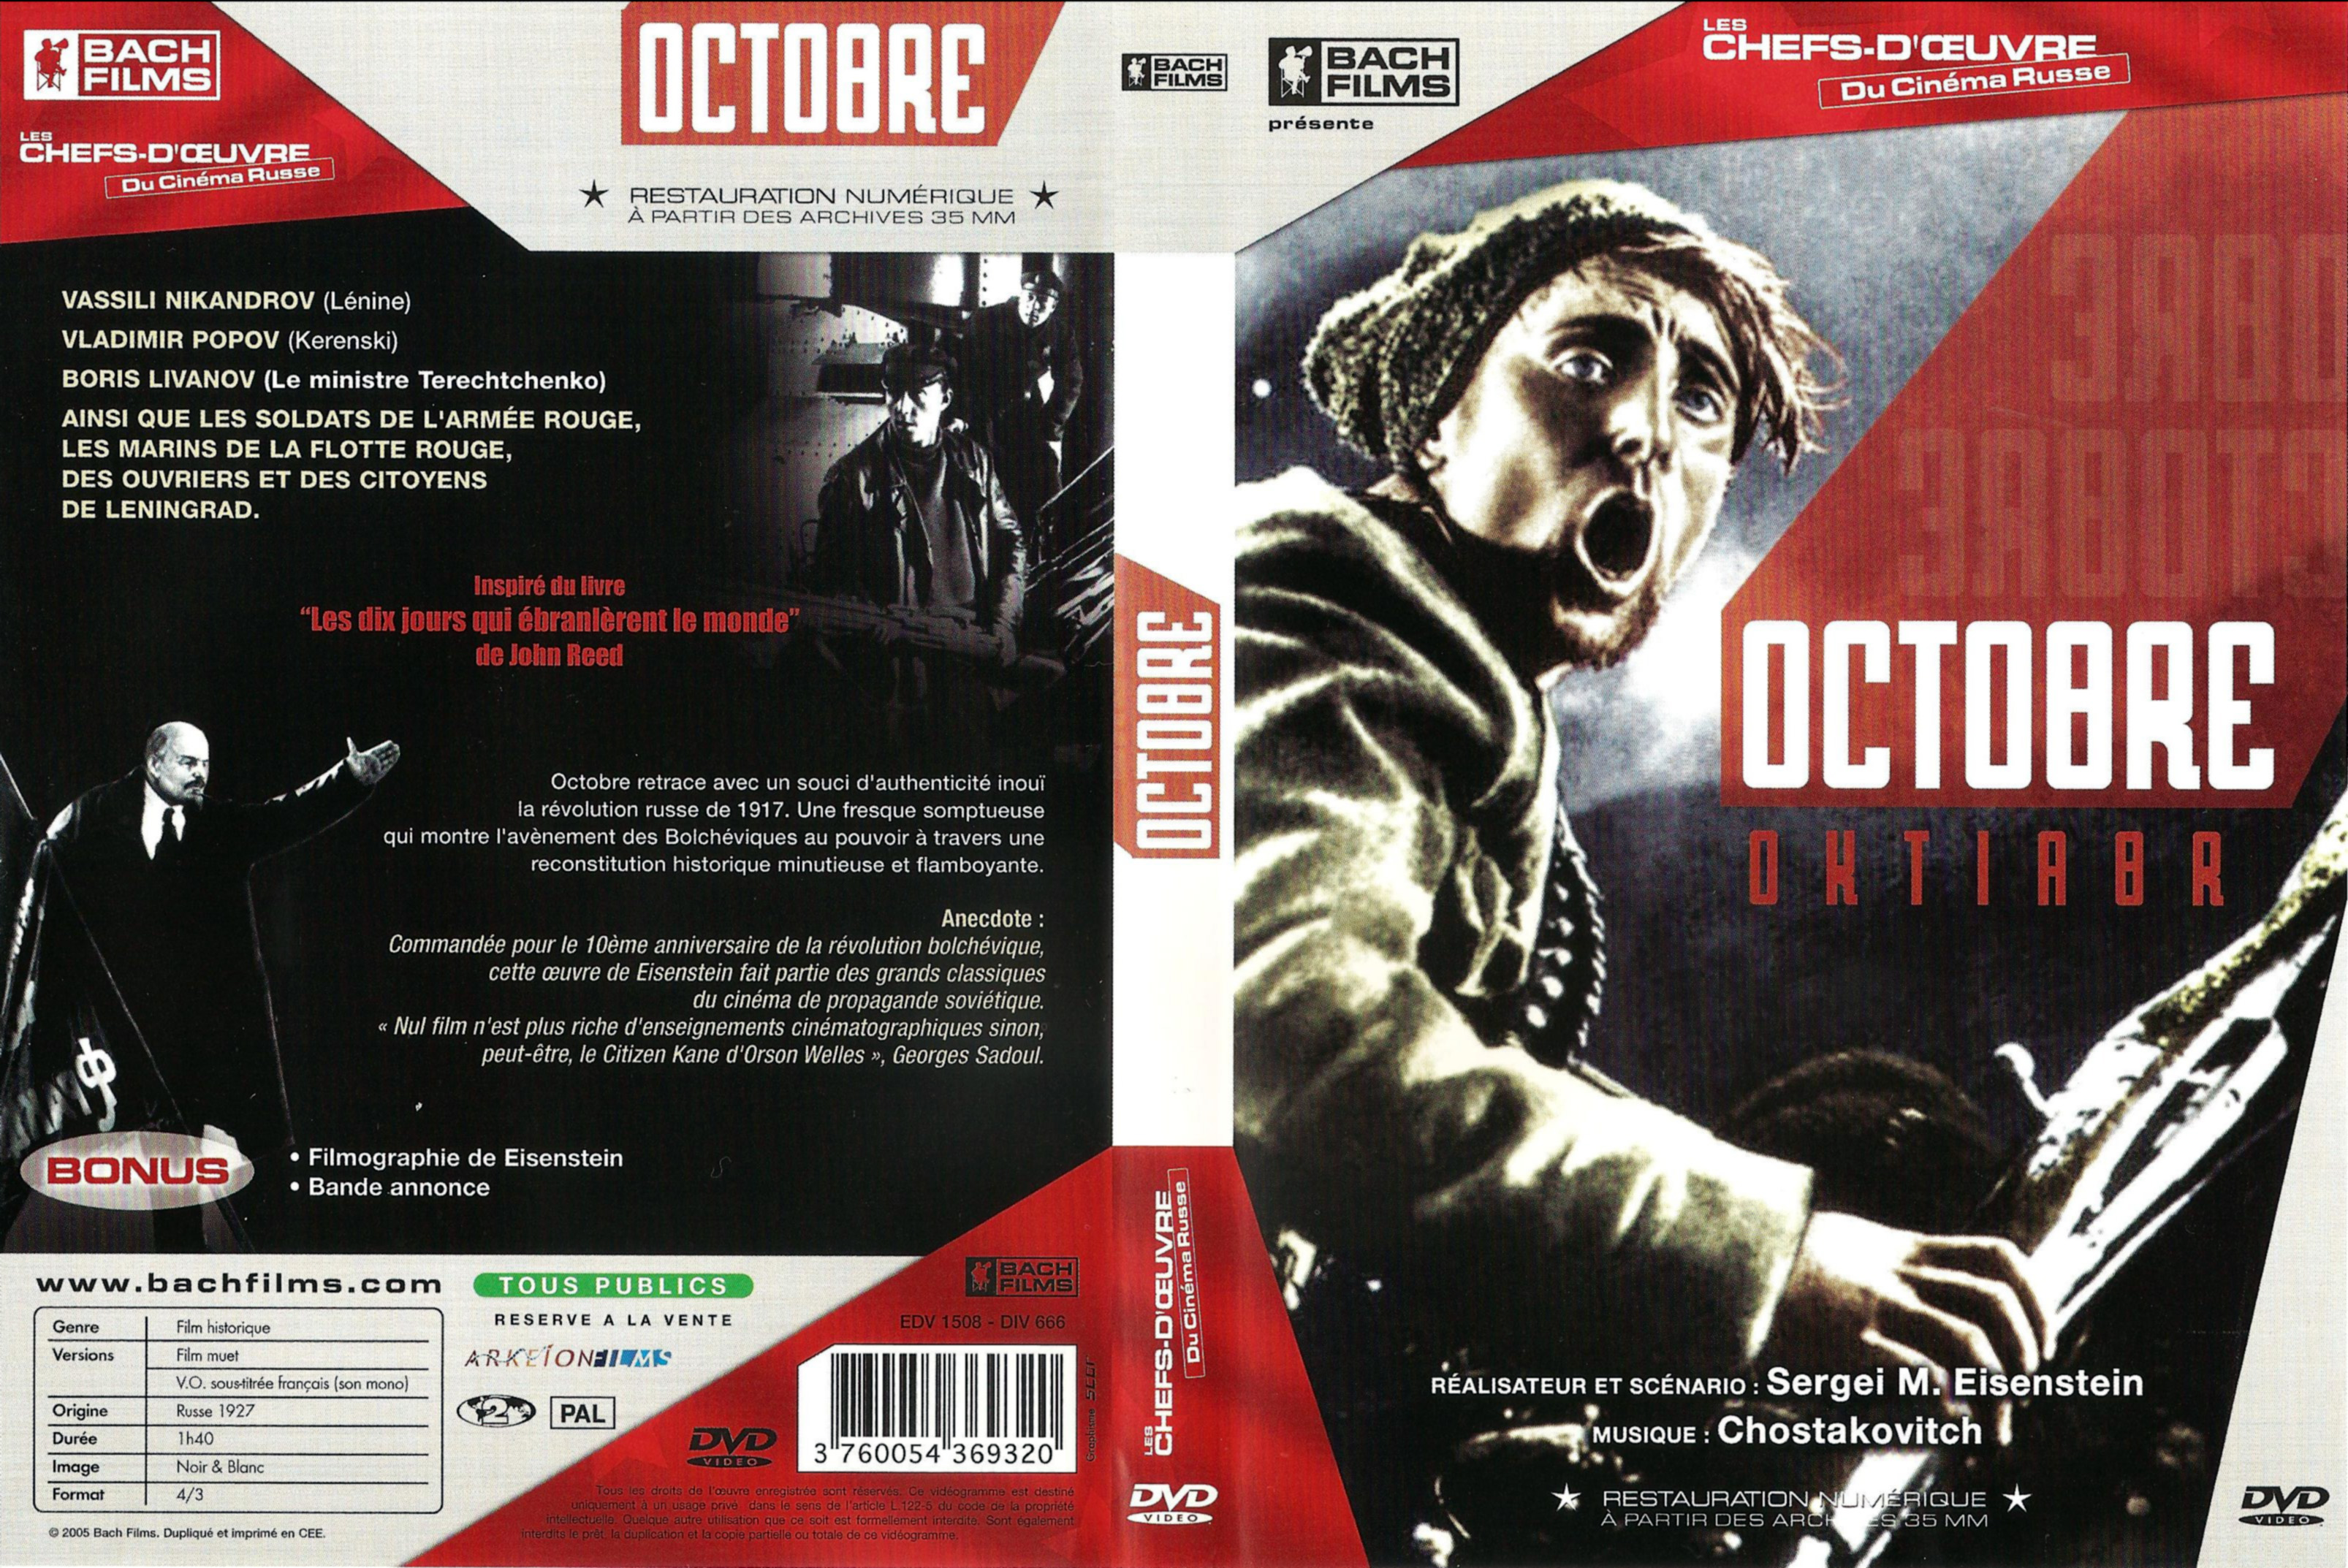 Jaquette DVD Octobre